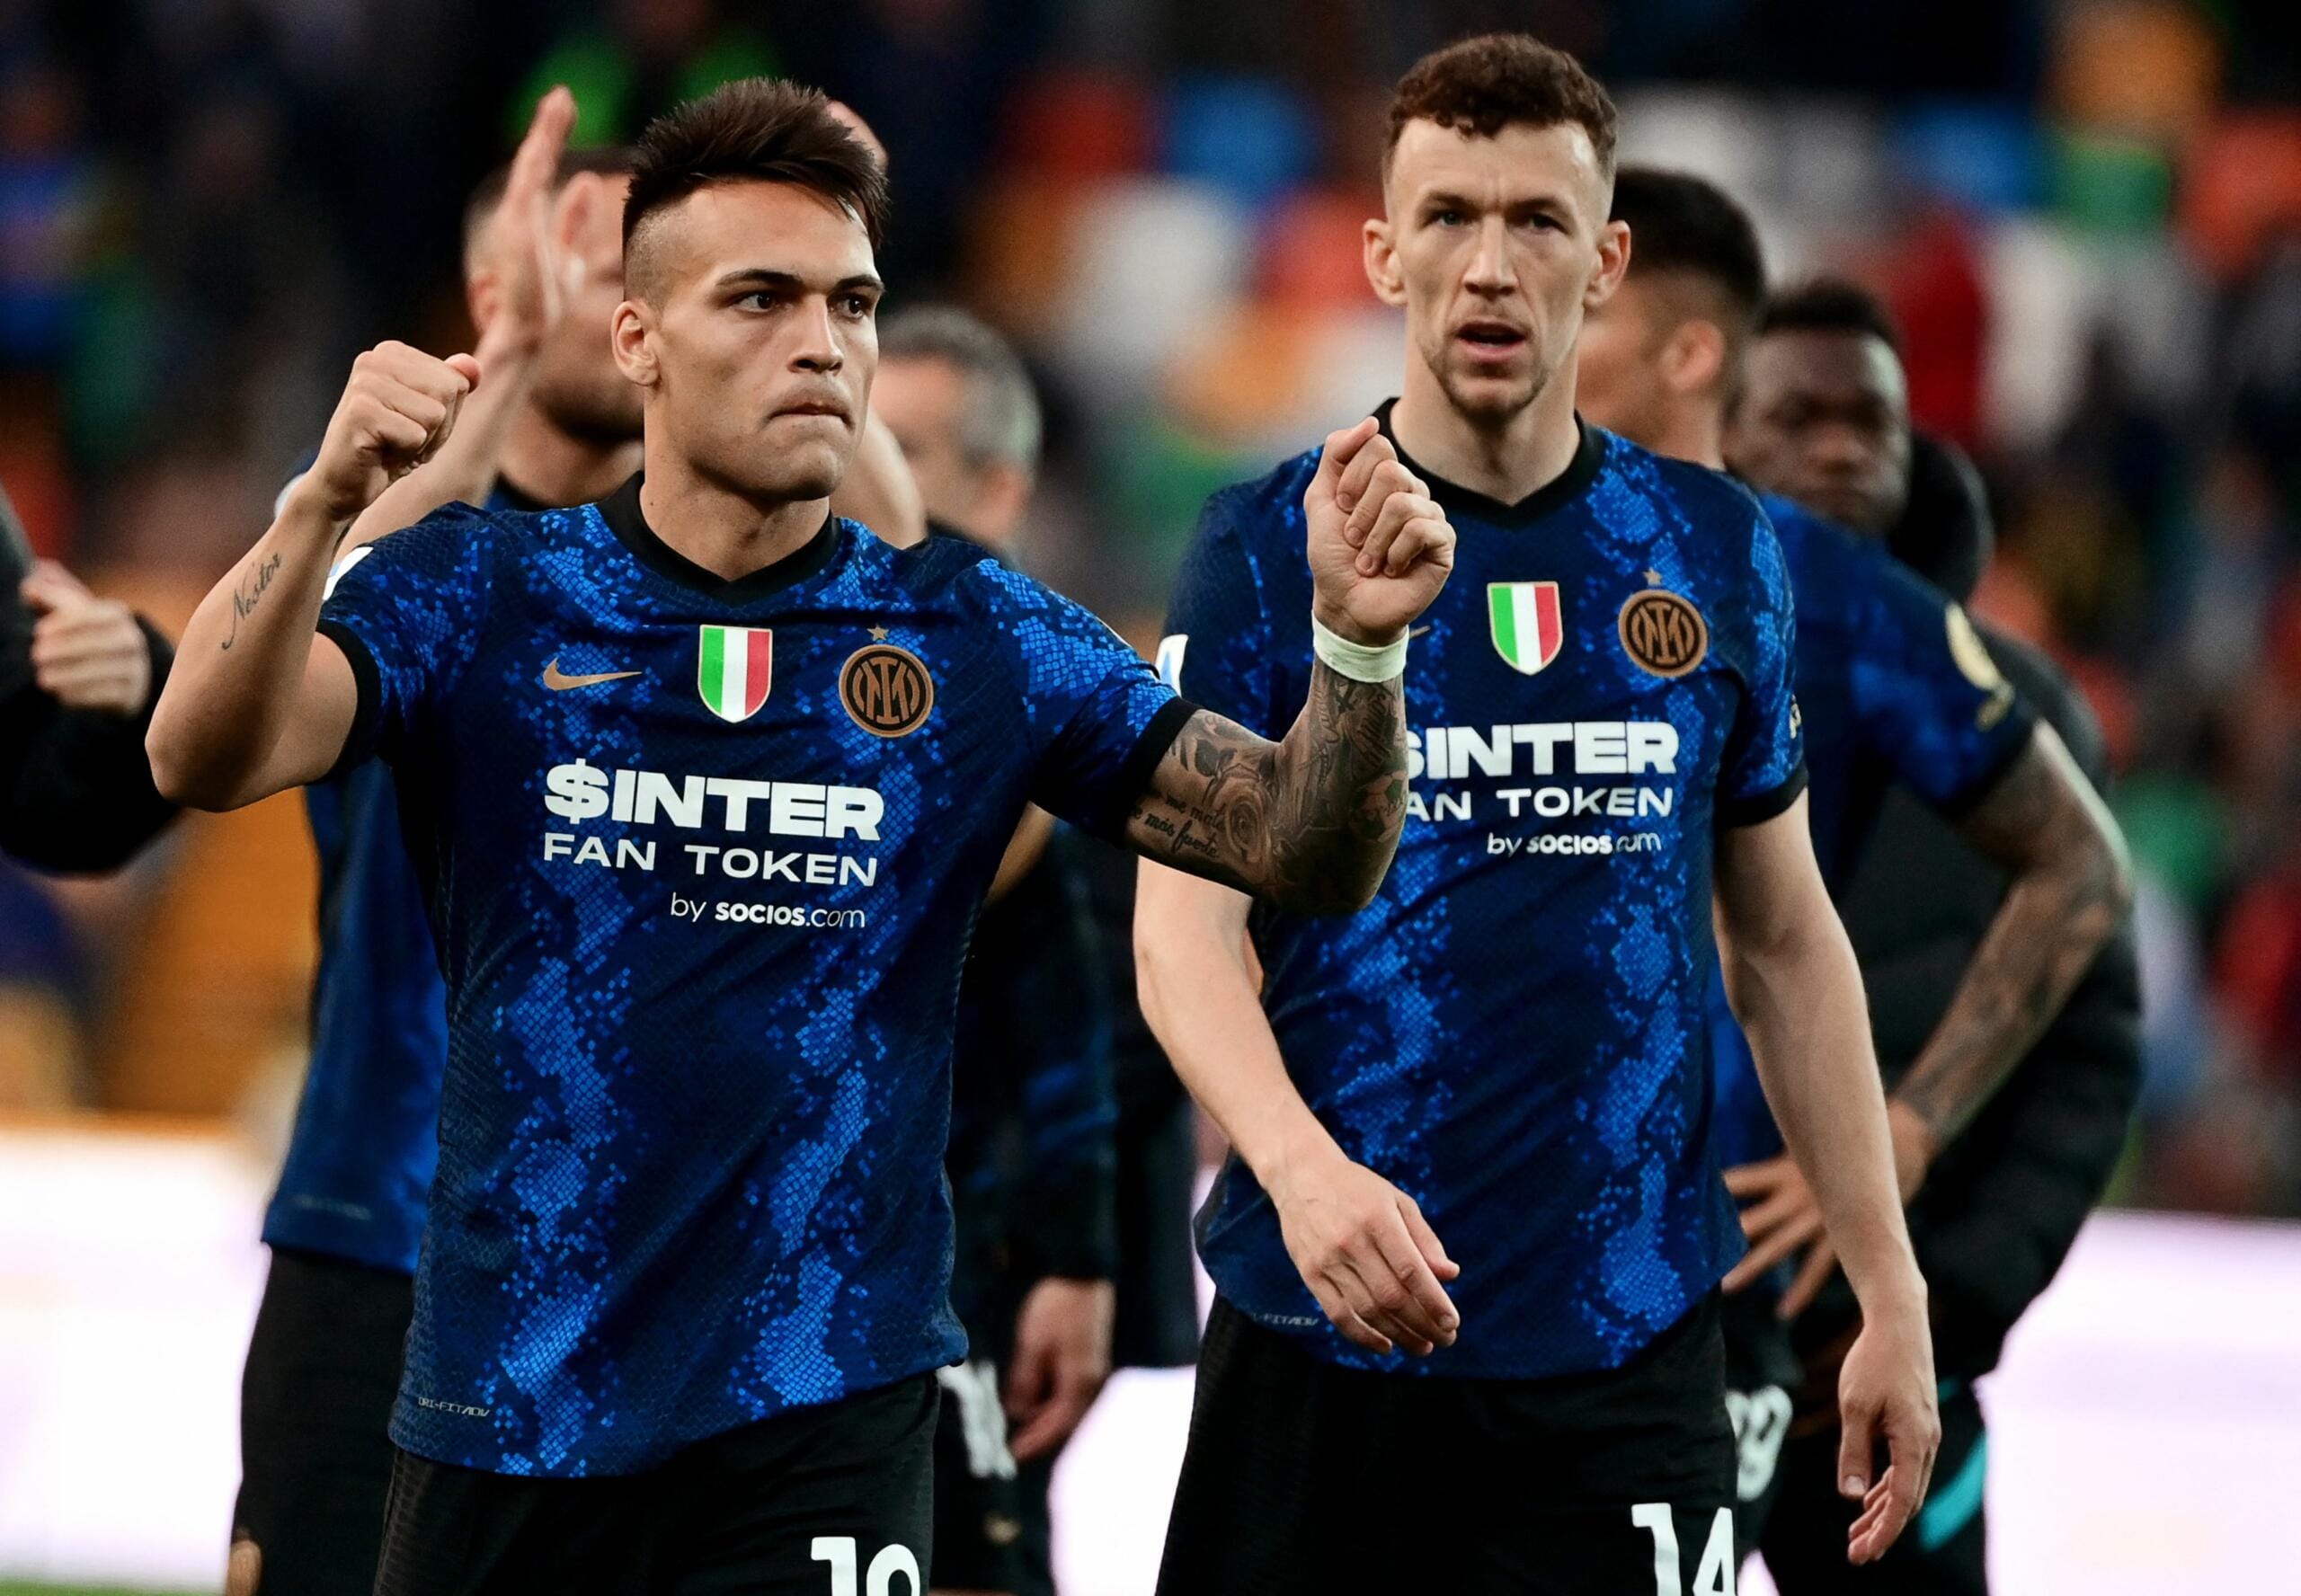 Calcio: l’Inter verso lo scudetto?